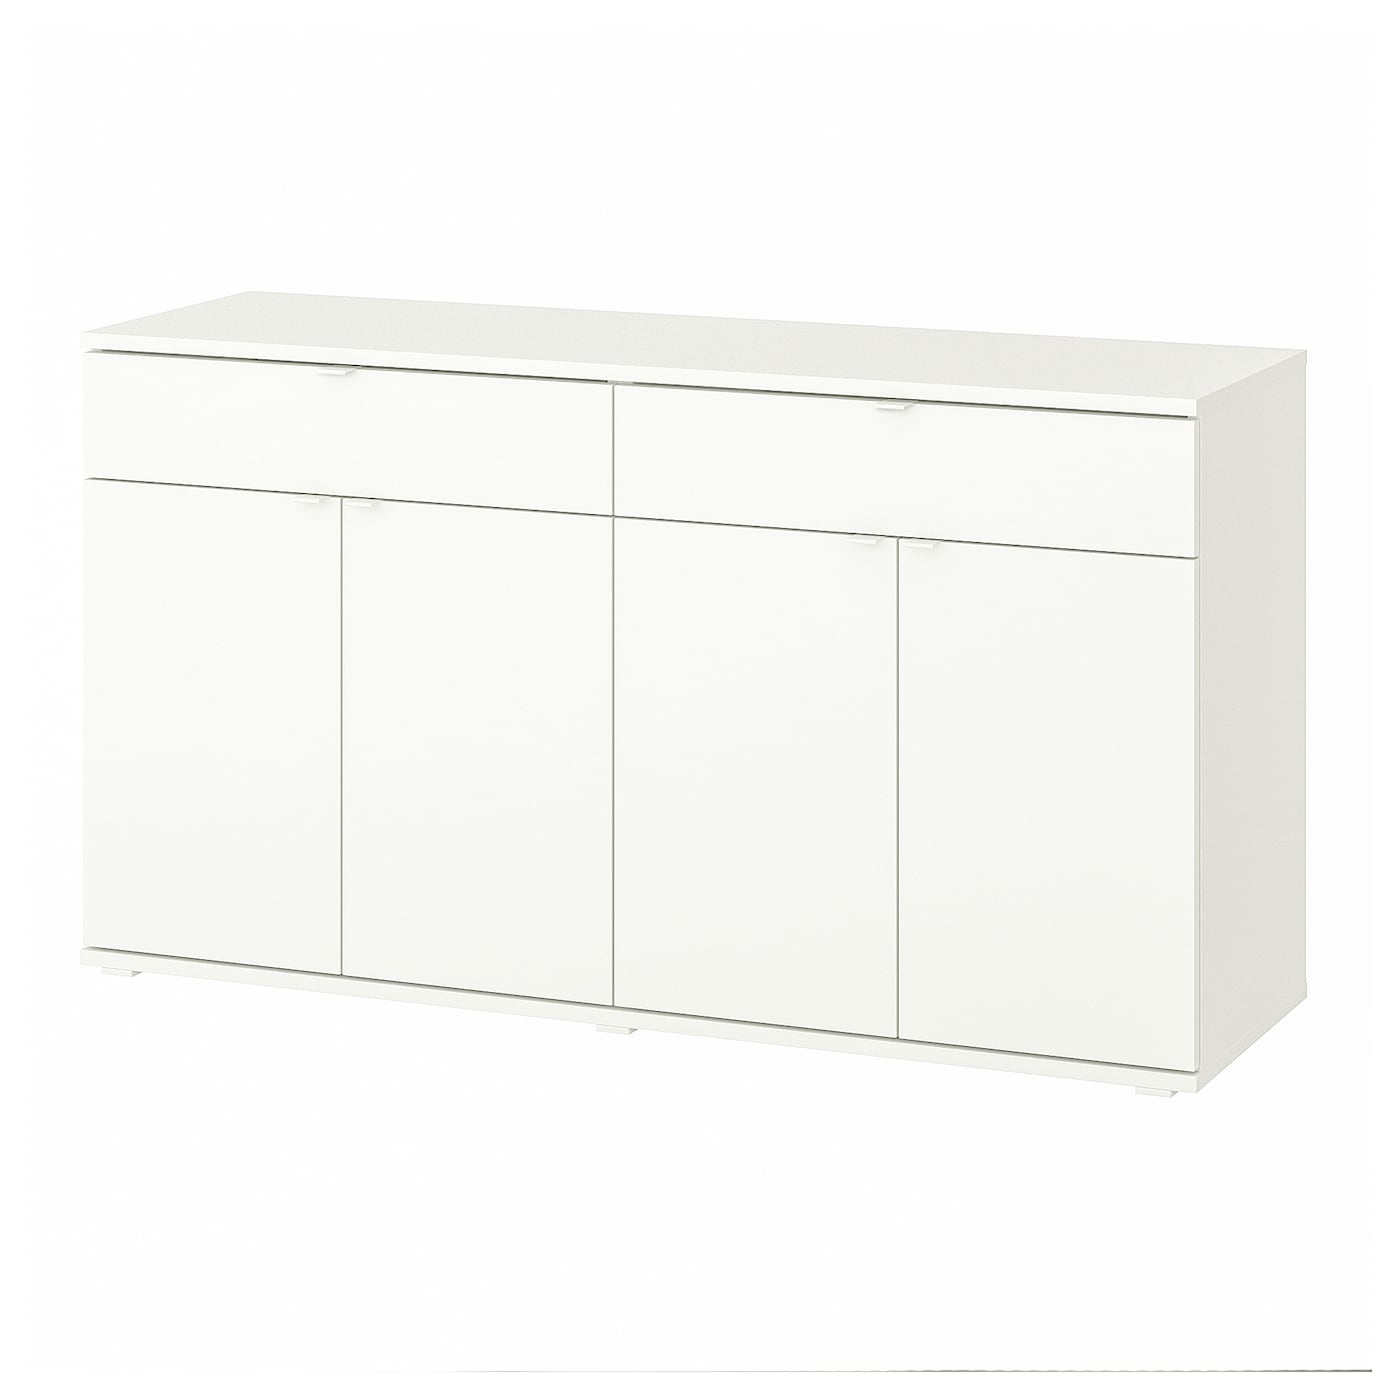 Шкаф - VIHALS  IKEA/ ВИХАЛС ИКЕА, 140x37x75 см, белый